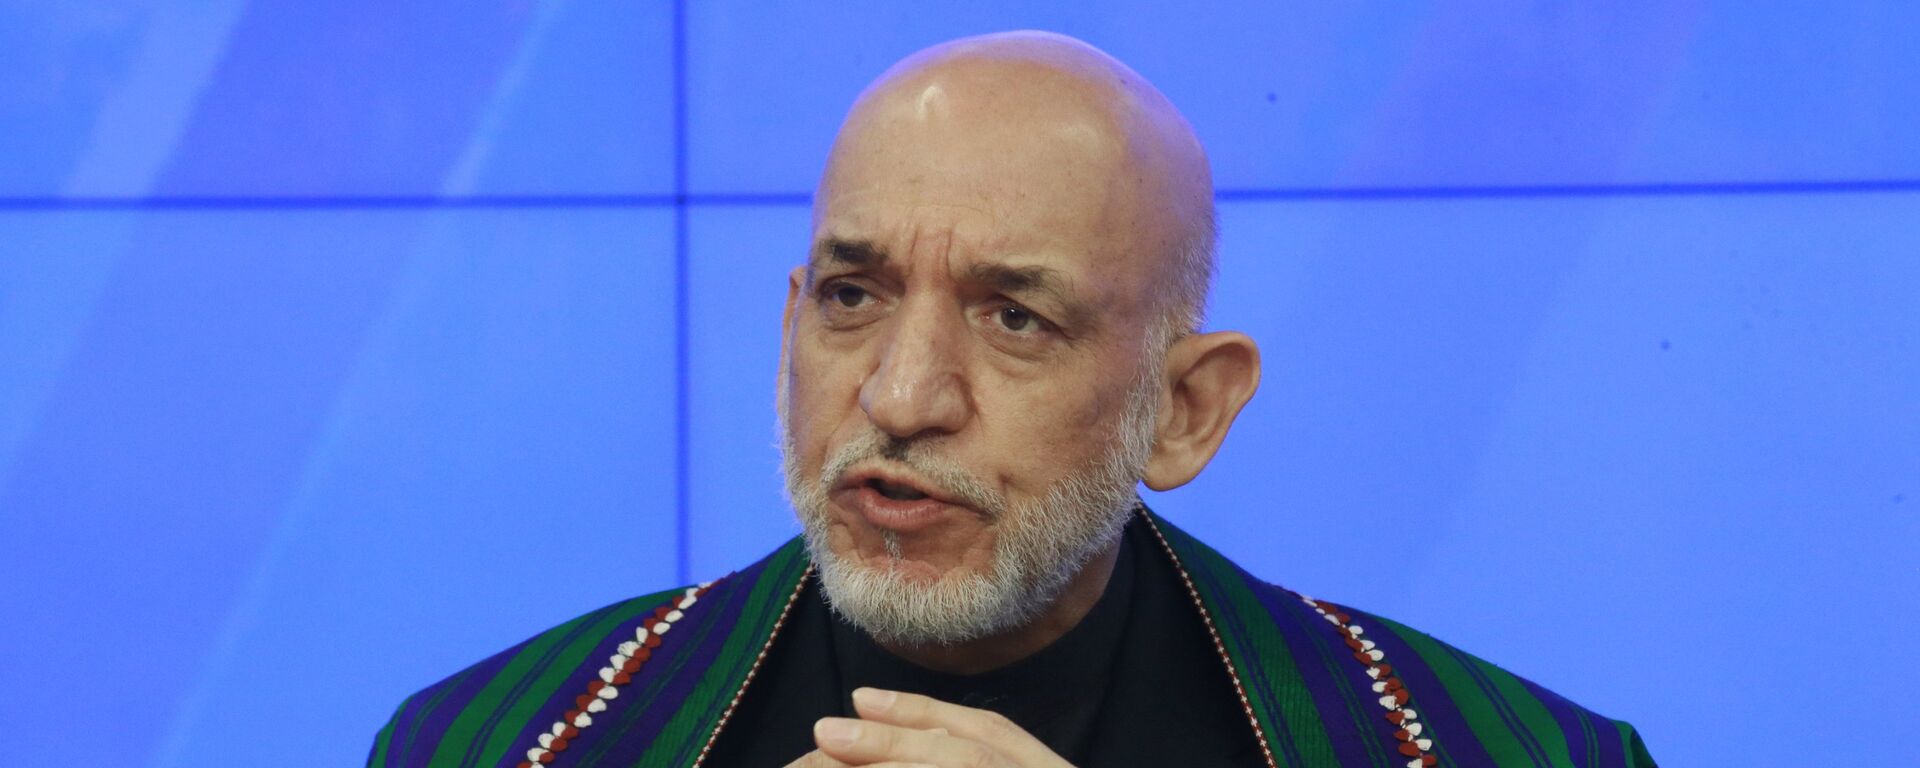 Экс-президент Исламской республики Афганистан Хамид Карзай - Sputnik Узбекистан, 1920, 11.06.2019